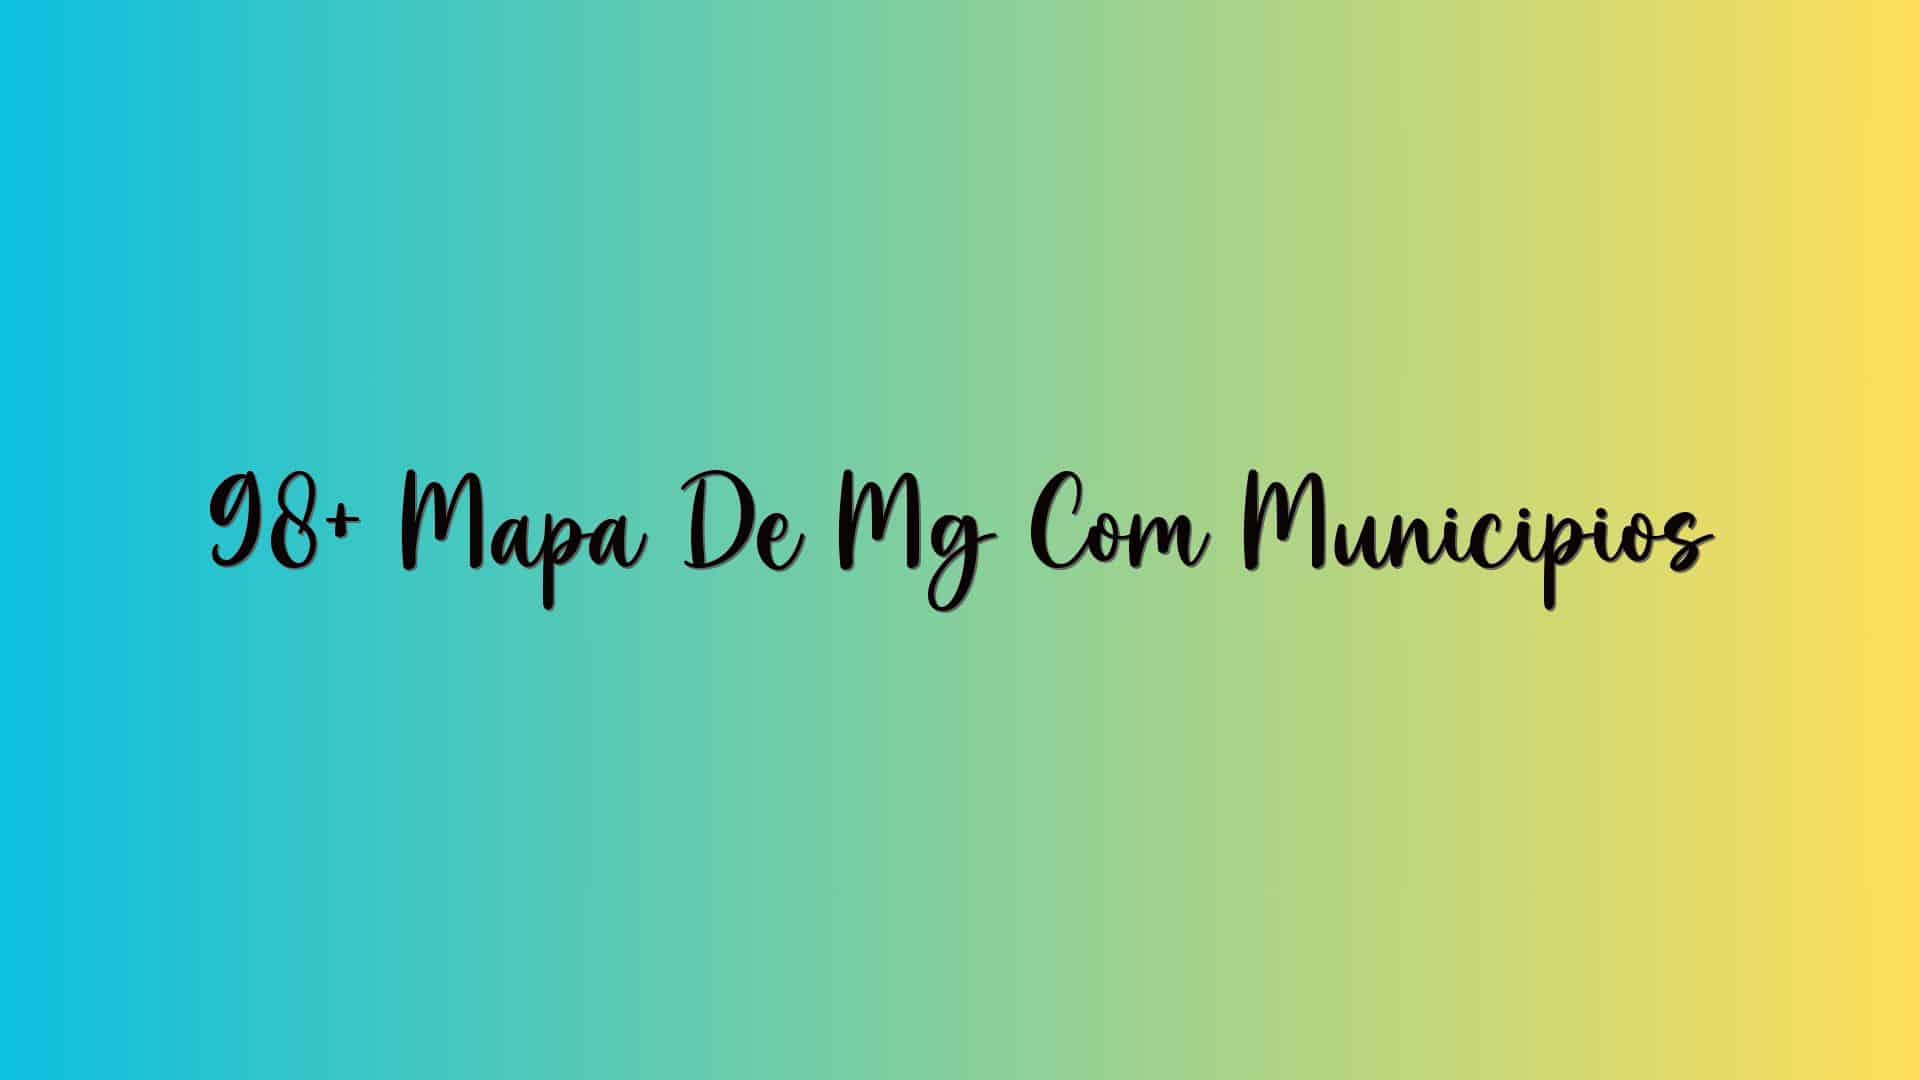 98+ Mapa De Mg Com Municipios